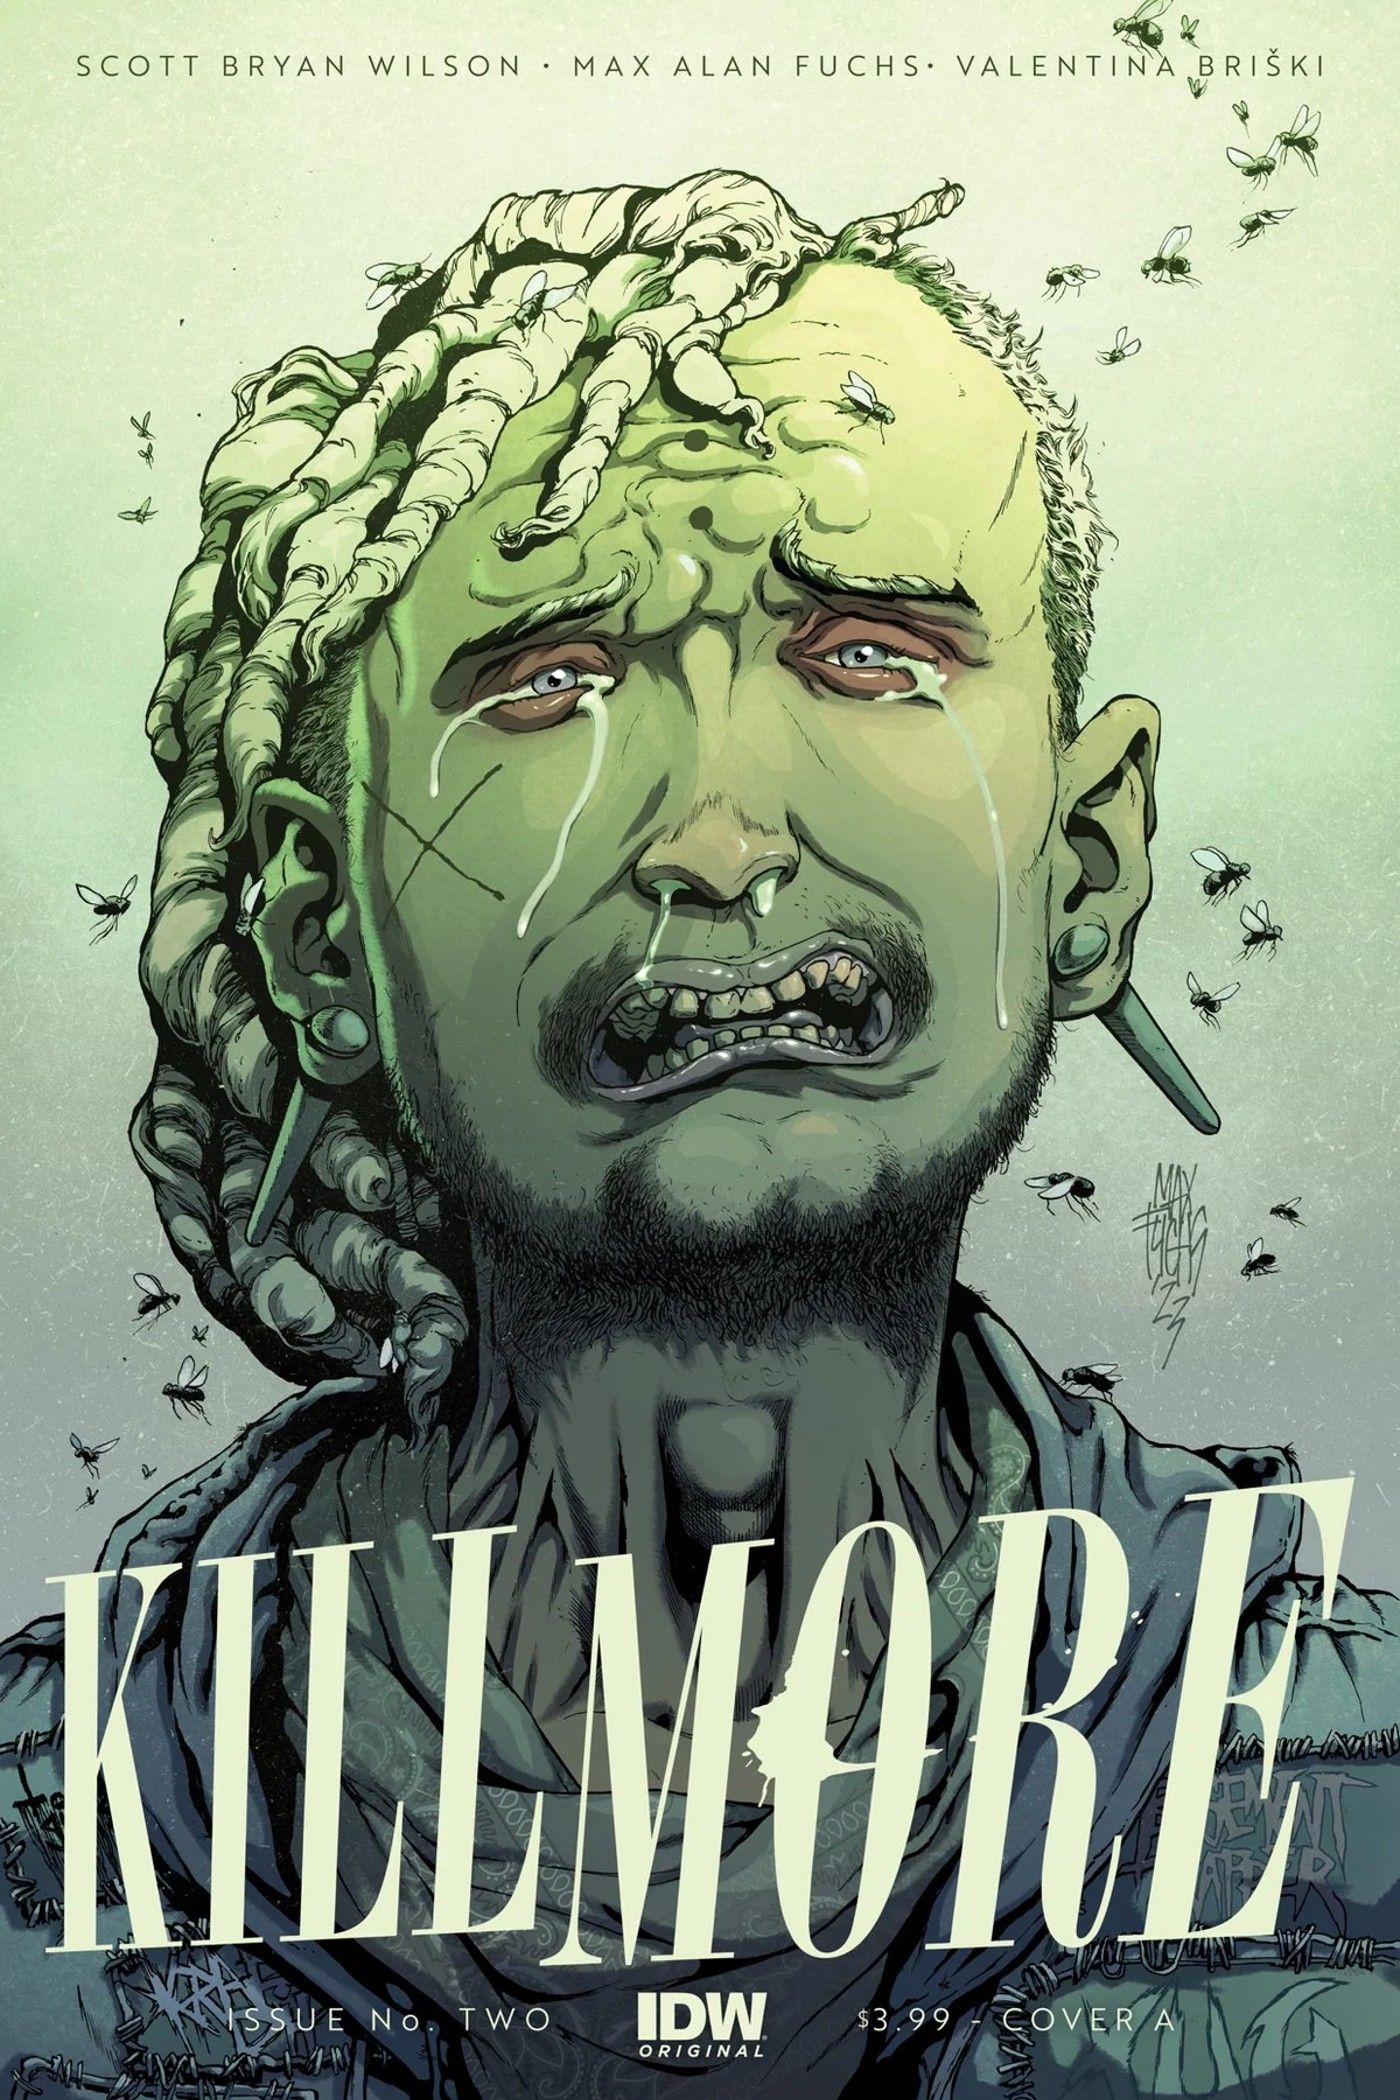 Sampul IDW's Kill More #2, menampilkan pria berambut gimbal menangis, dikelilingi lalat yang berdengung